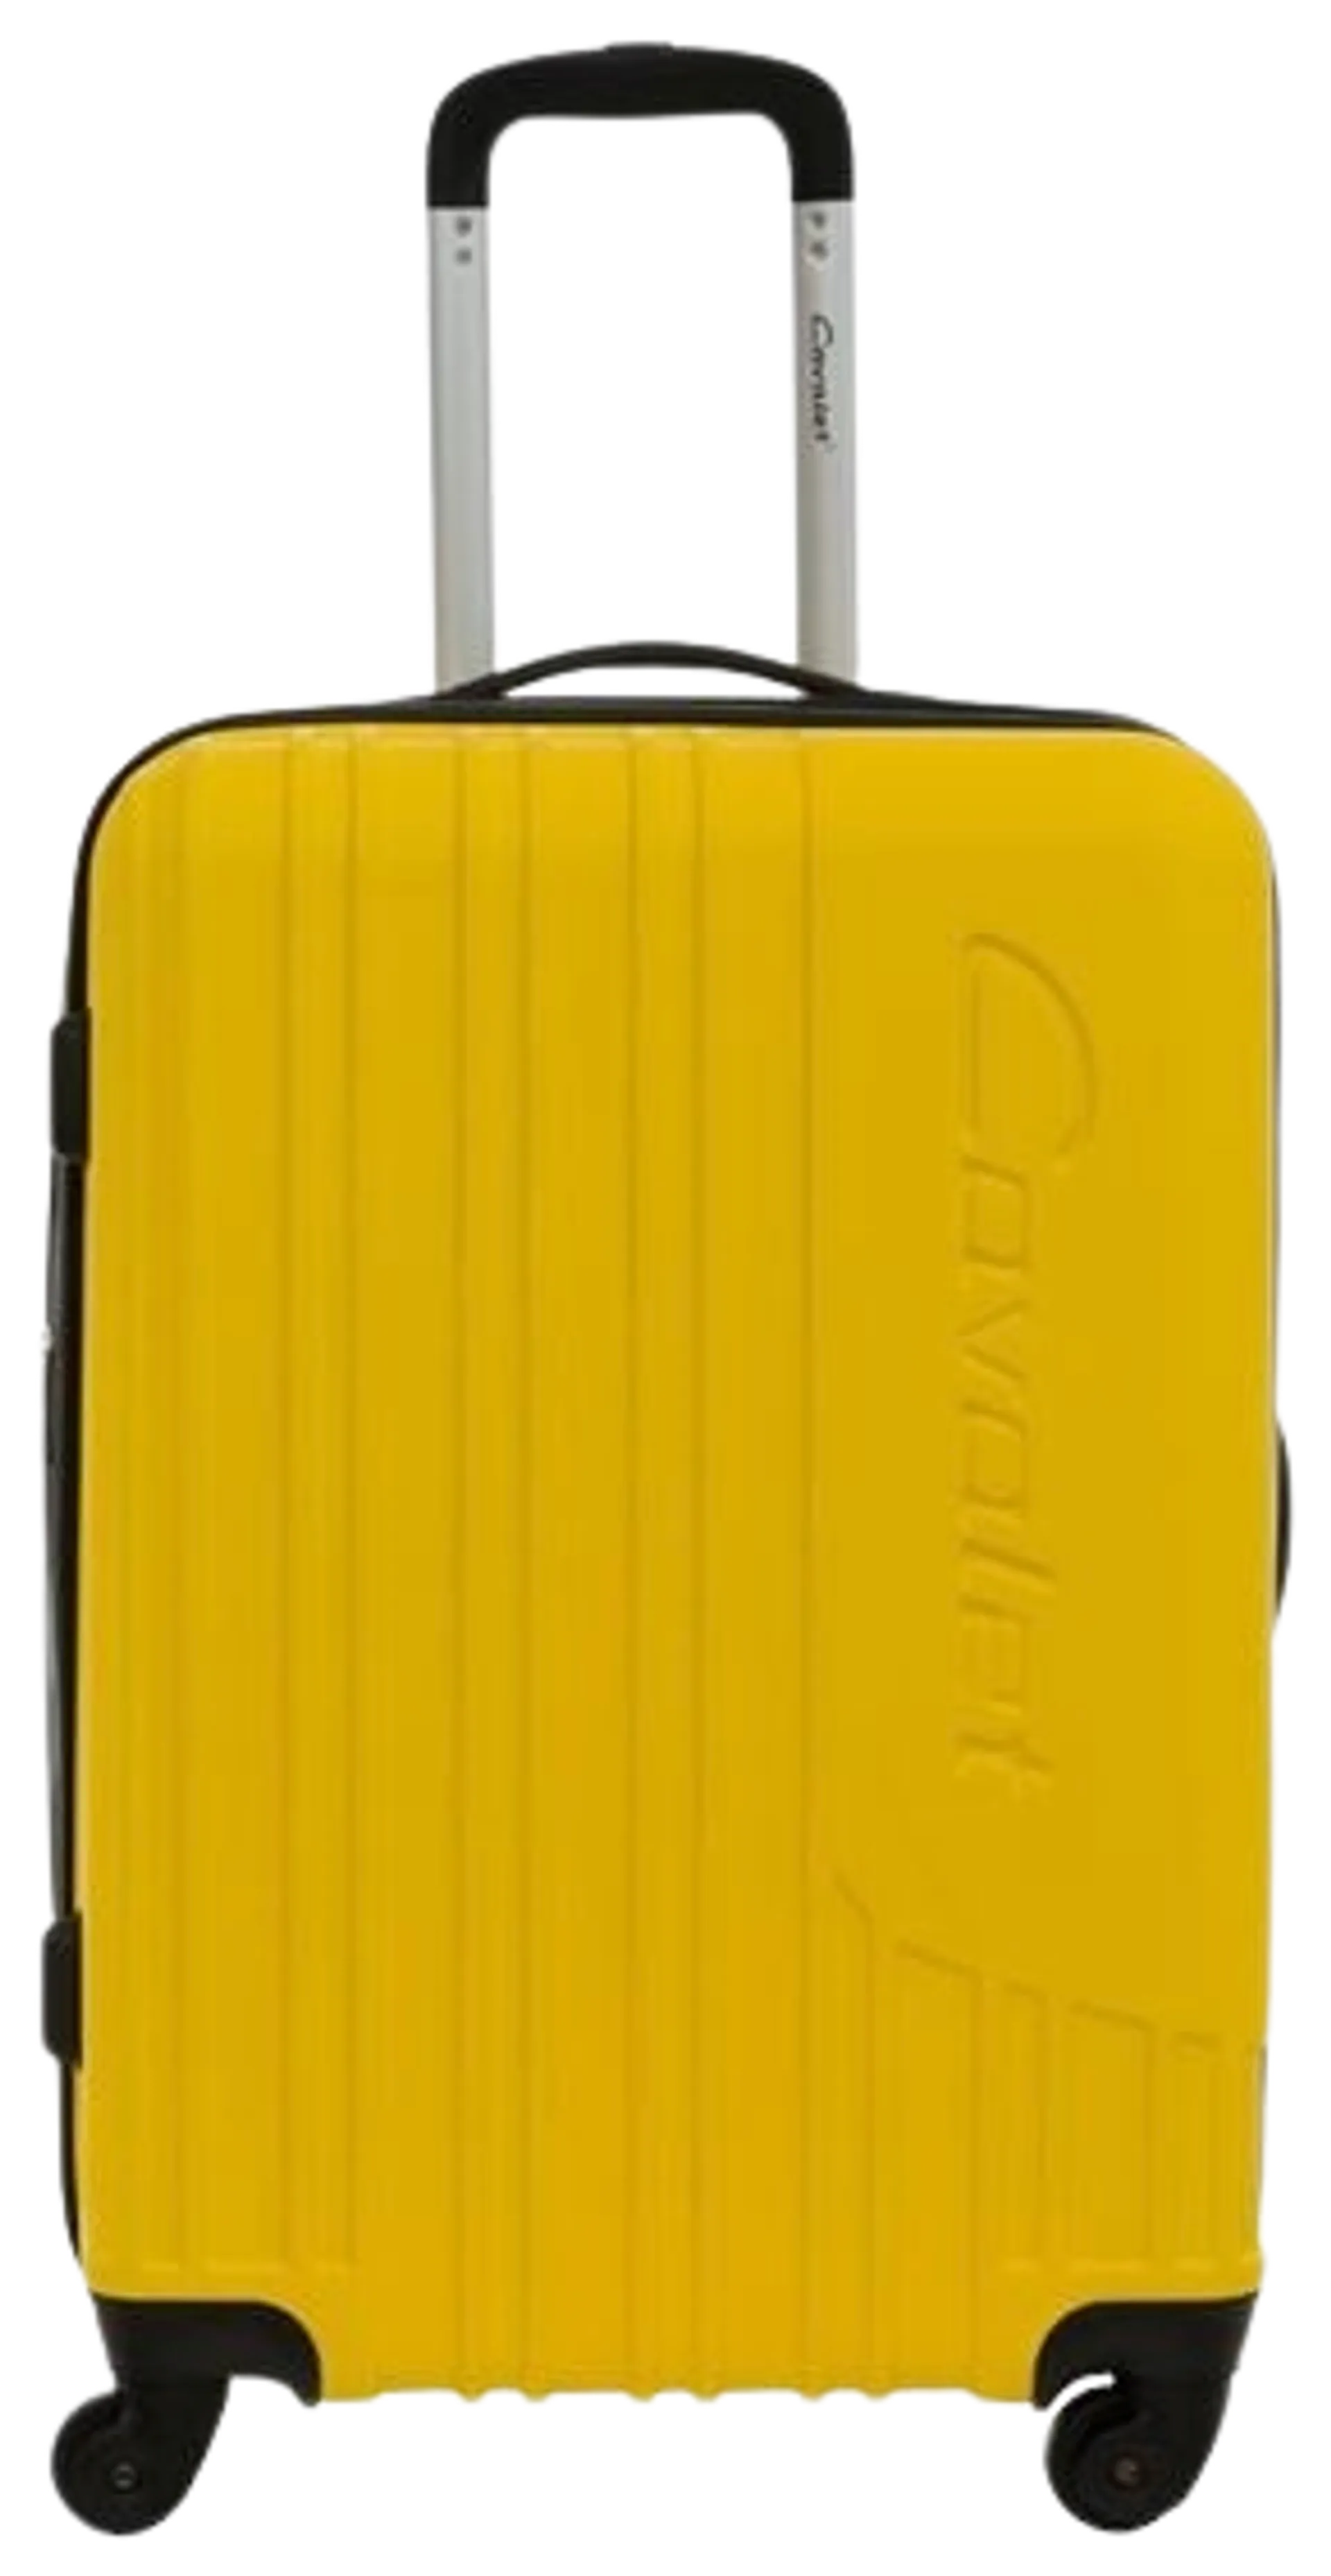 Cavalet Malibu matkalaukku M 64 cm, keltainen - 1